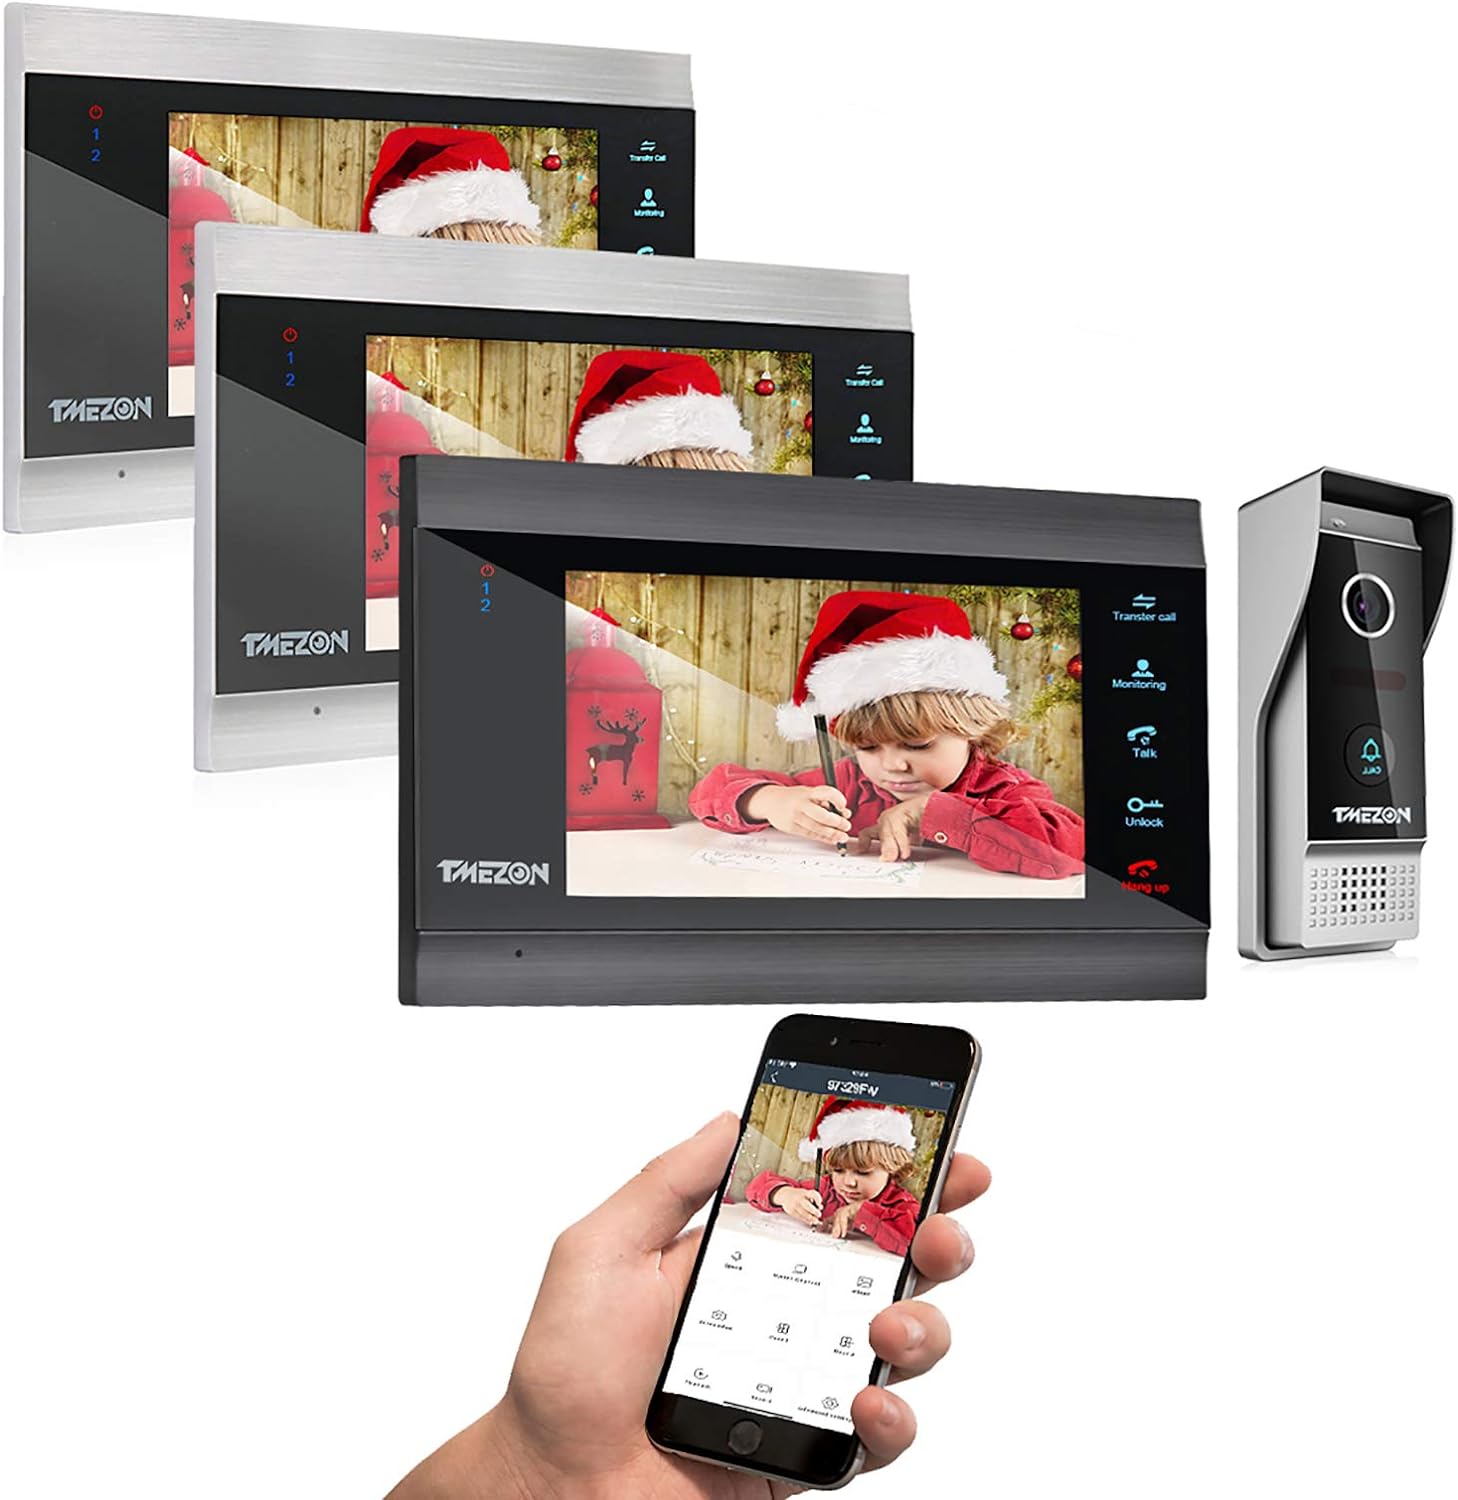 TMEZON 10" WiFi Smart Video Door Phone Doorbell Intercom System IP LCD Monitor 